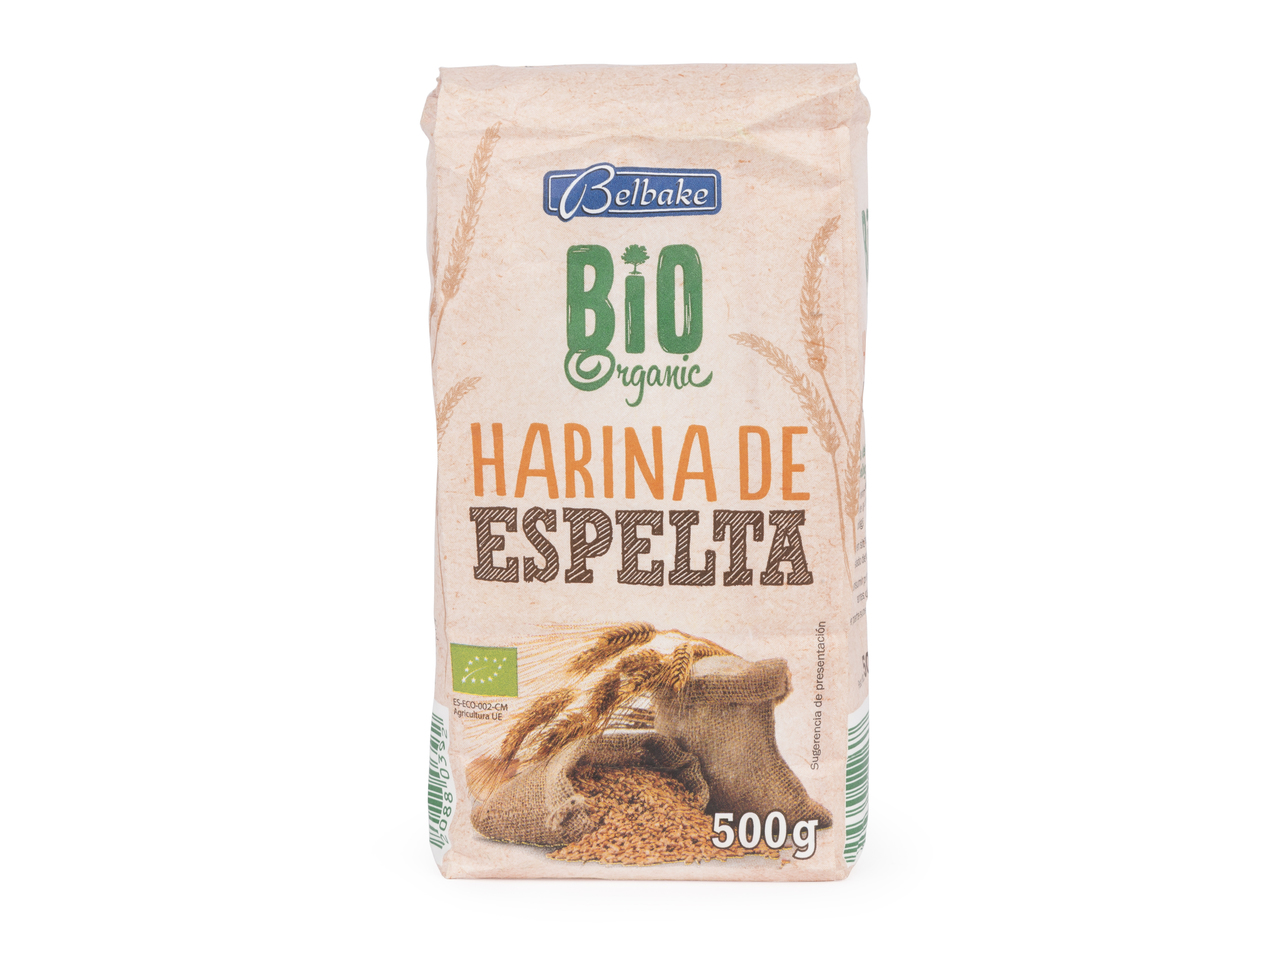 "Belbake" Harina de espelta ecológica